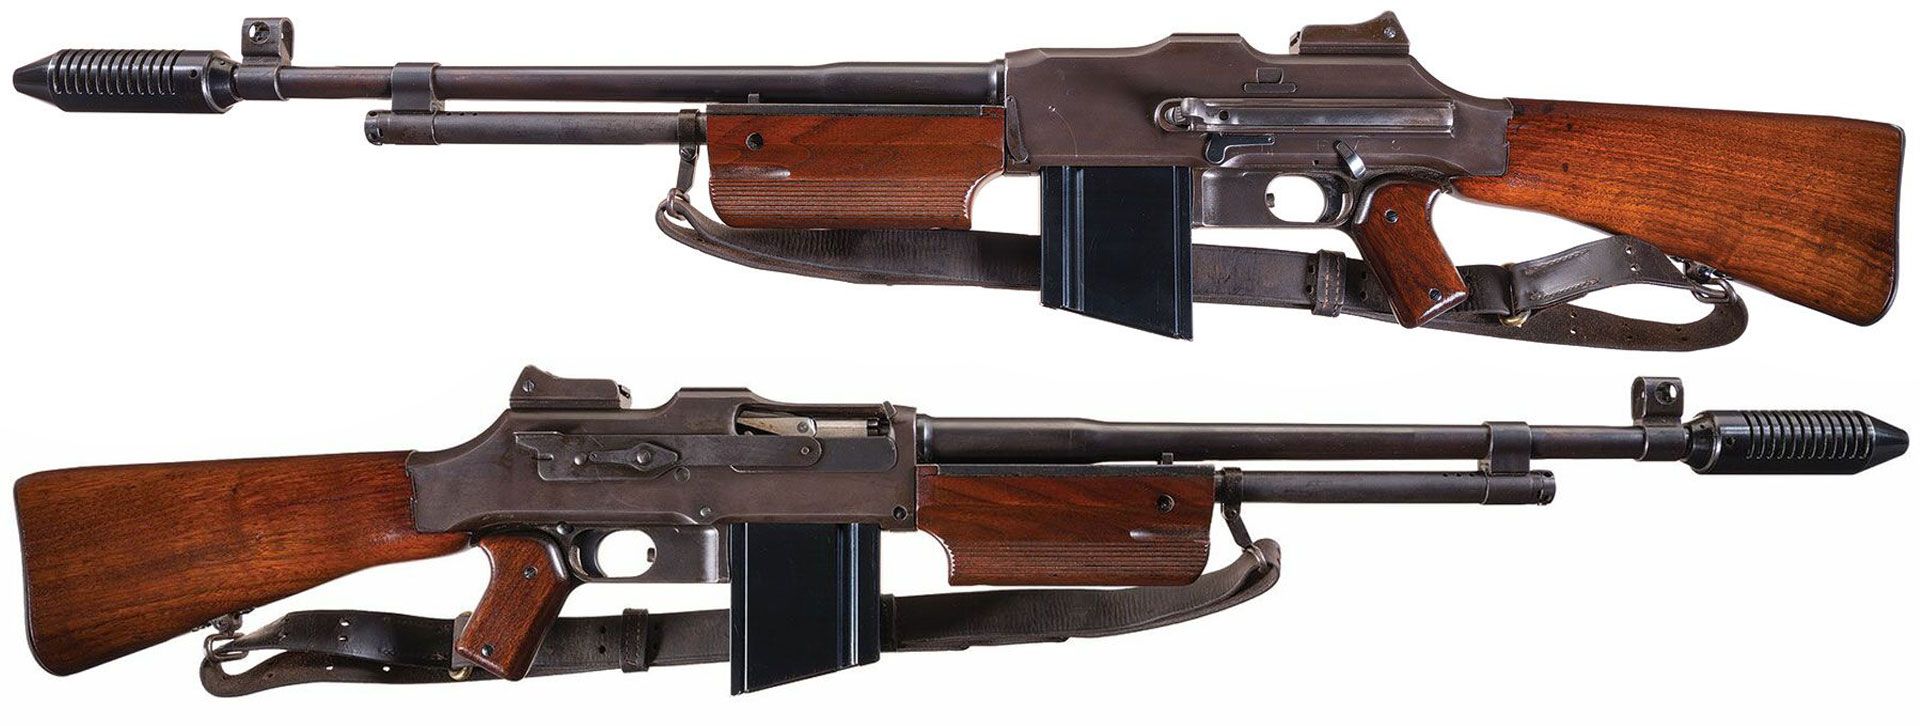 Colt-R80-machine-gun-BAR